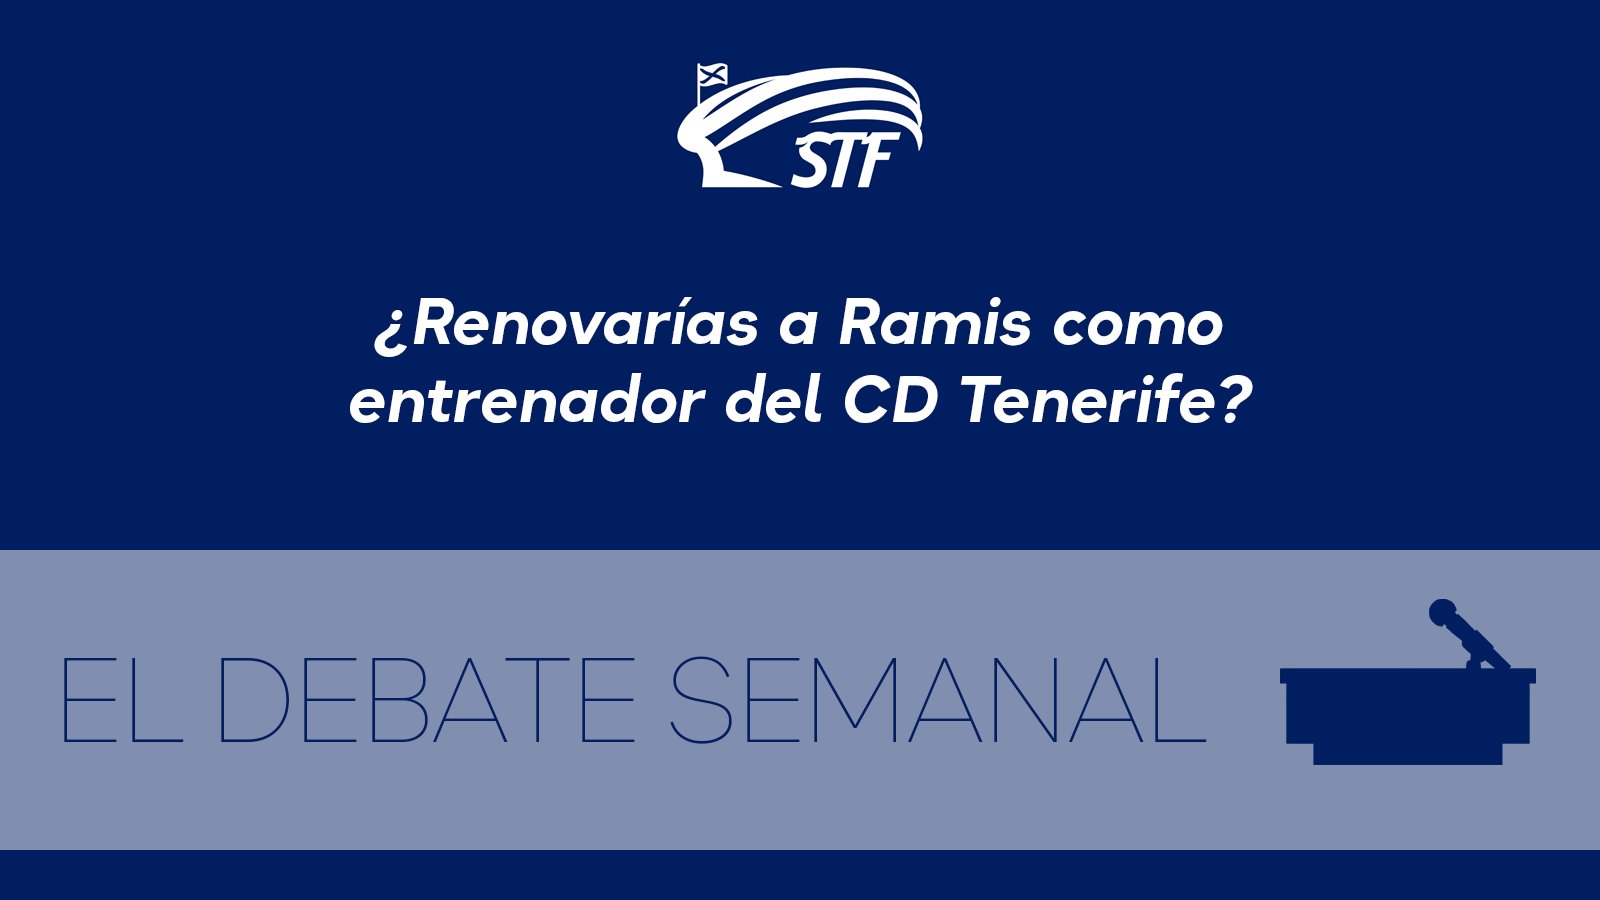 El Debate Semanal: ¿Renovarías a Ramis como entrenador del CD Tenerife? El 50% por ciento dice no y el otro 50% dice sí.